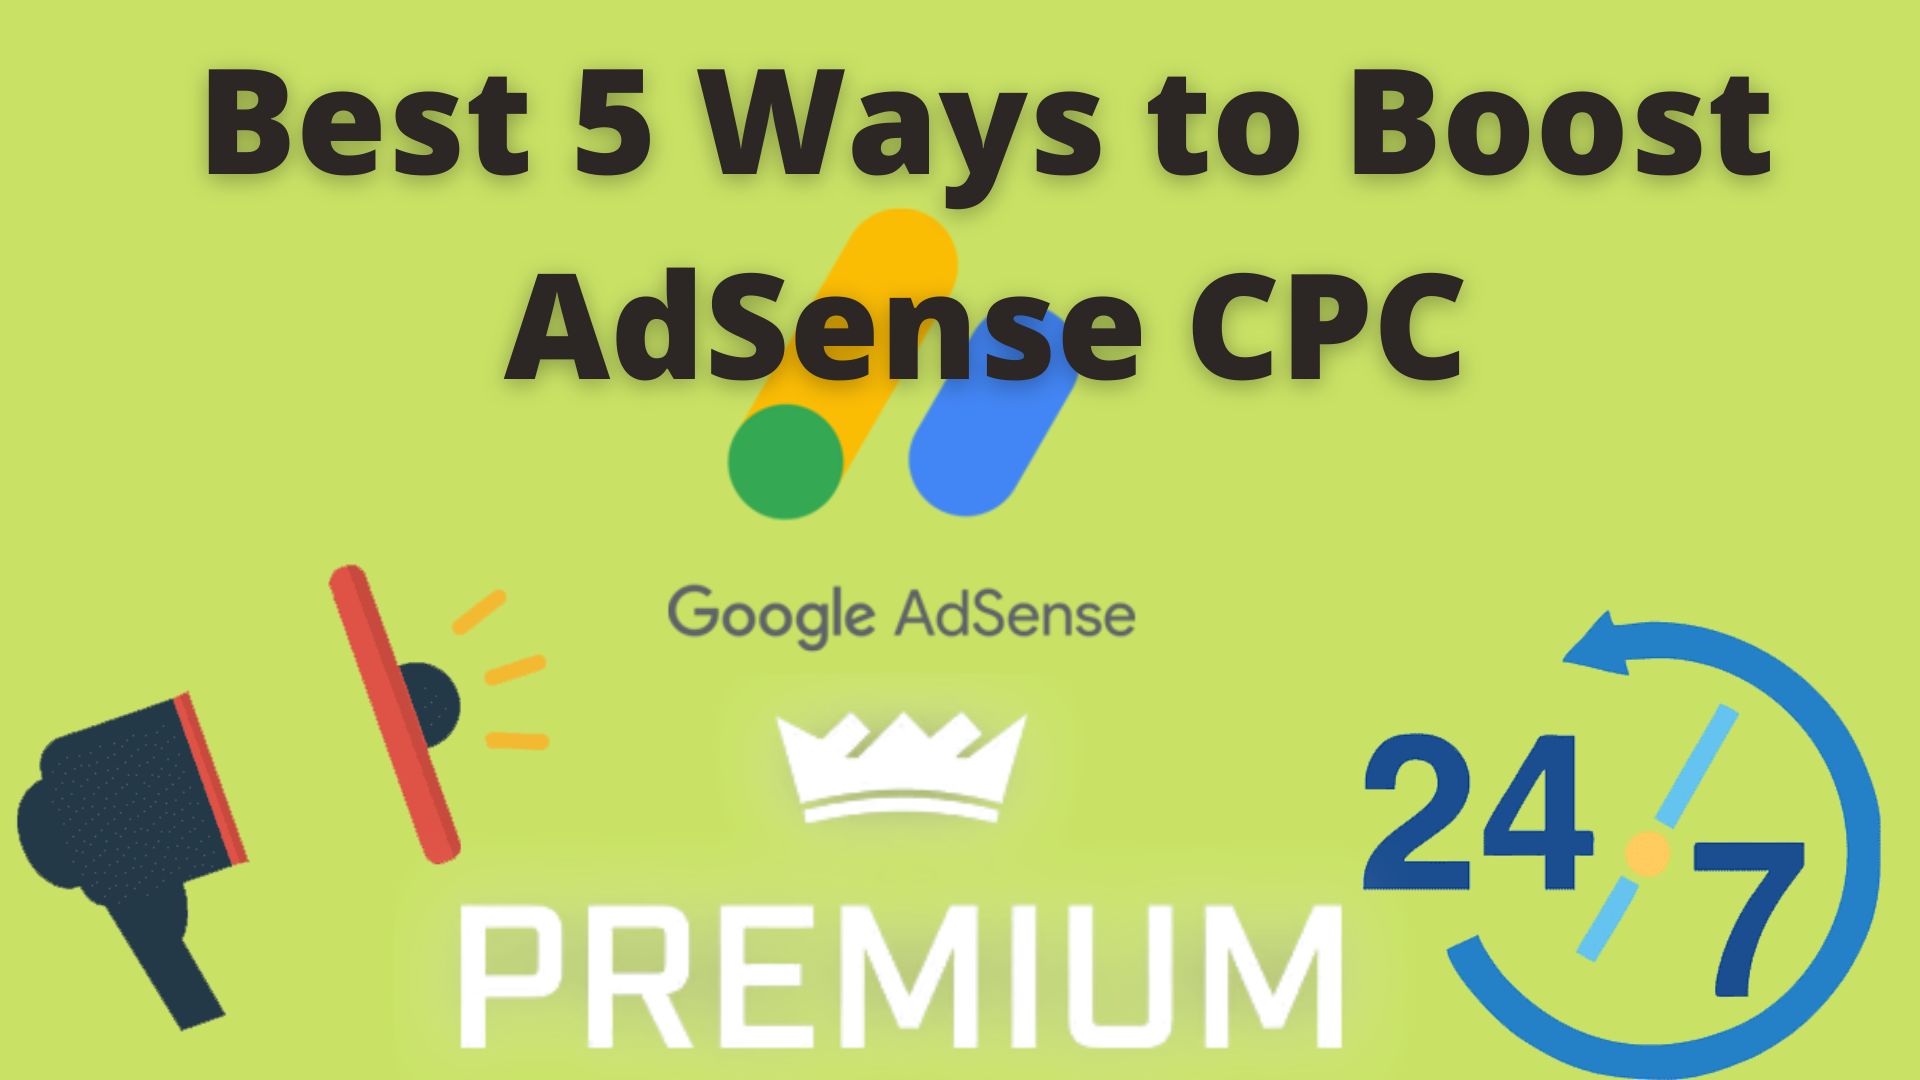 Best 5 Ways To Boost Adsense Cpc